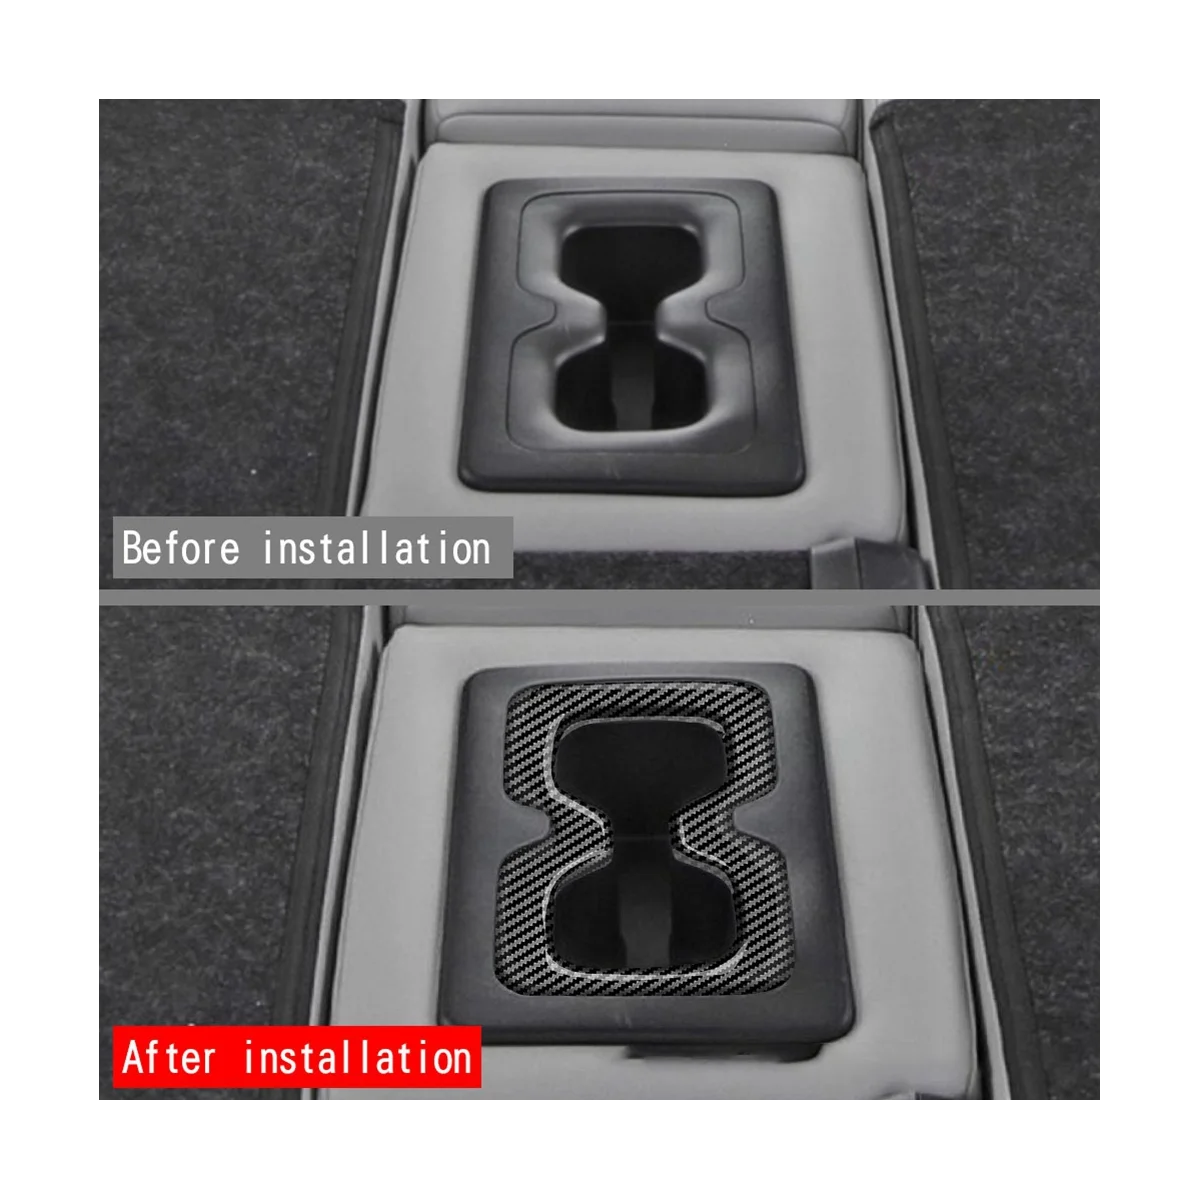 עבור מיצובישי נוכרי 2022 2023 פנים המכונית בסיבי פחמן האחורי המושב האחורי מים לכוס פנל קישוט לקצץ מסגרת התמונה 3